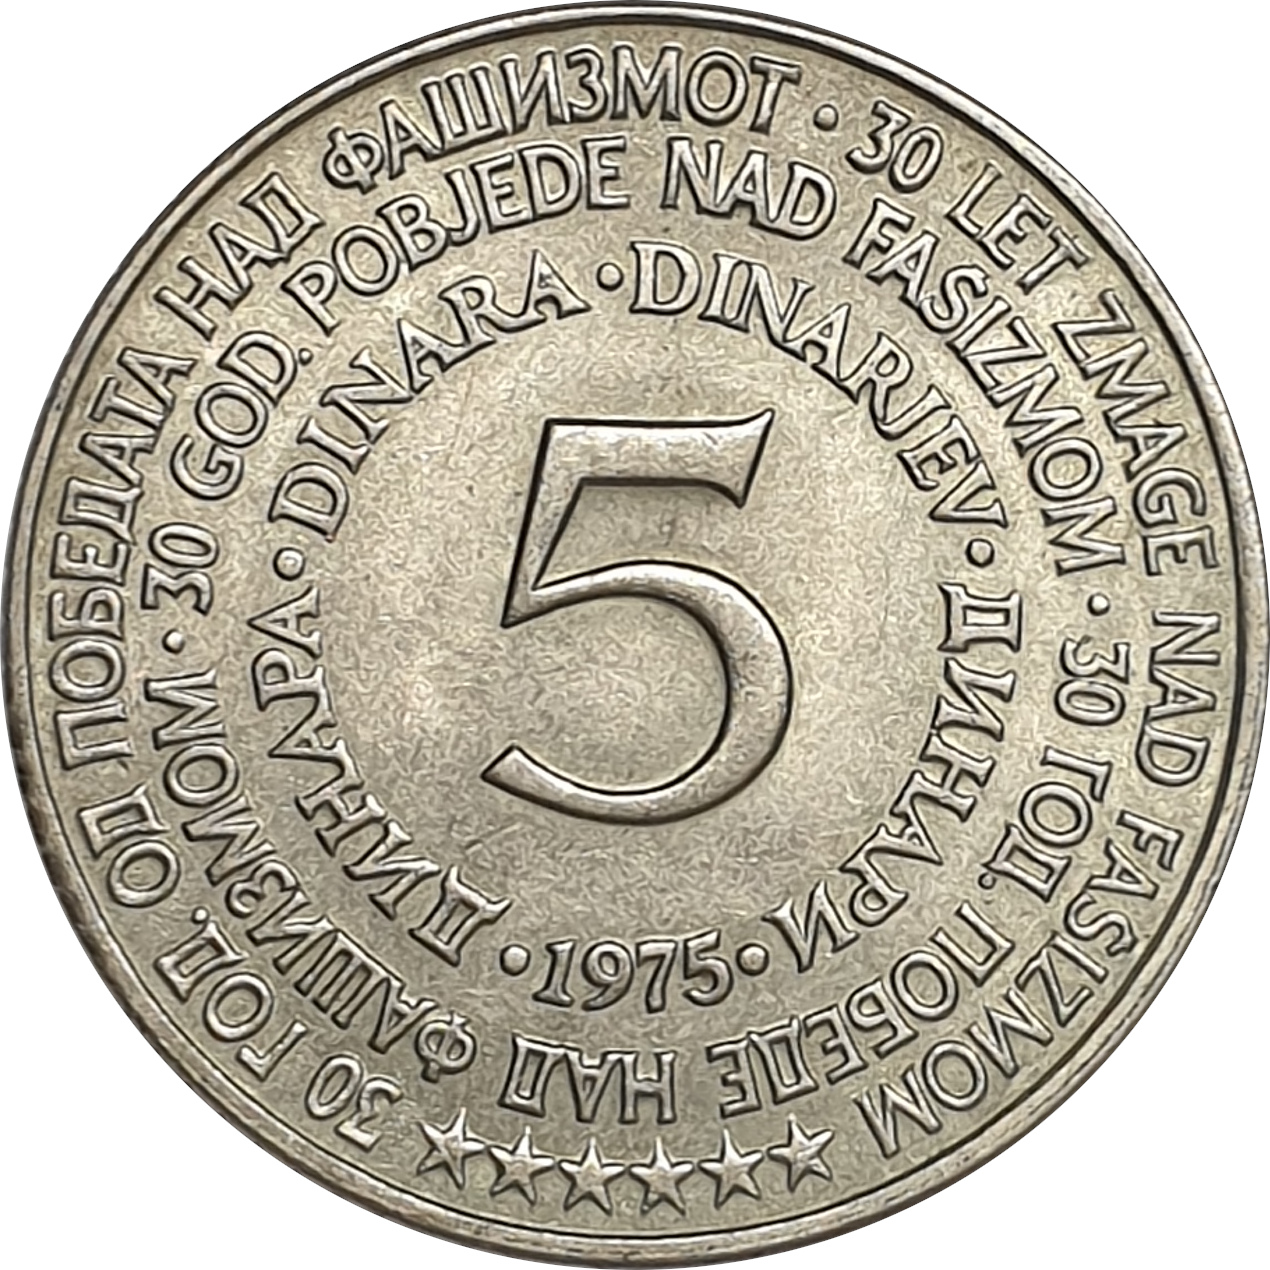 5 dinara - Emblème - Victoire sur les Nazis